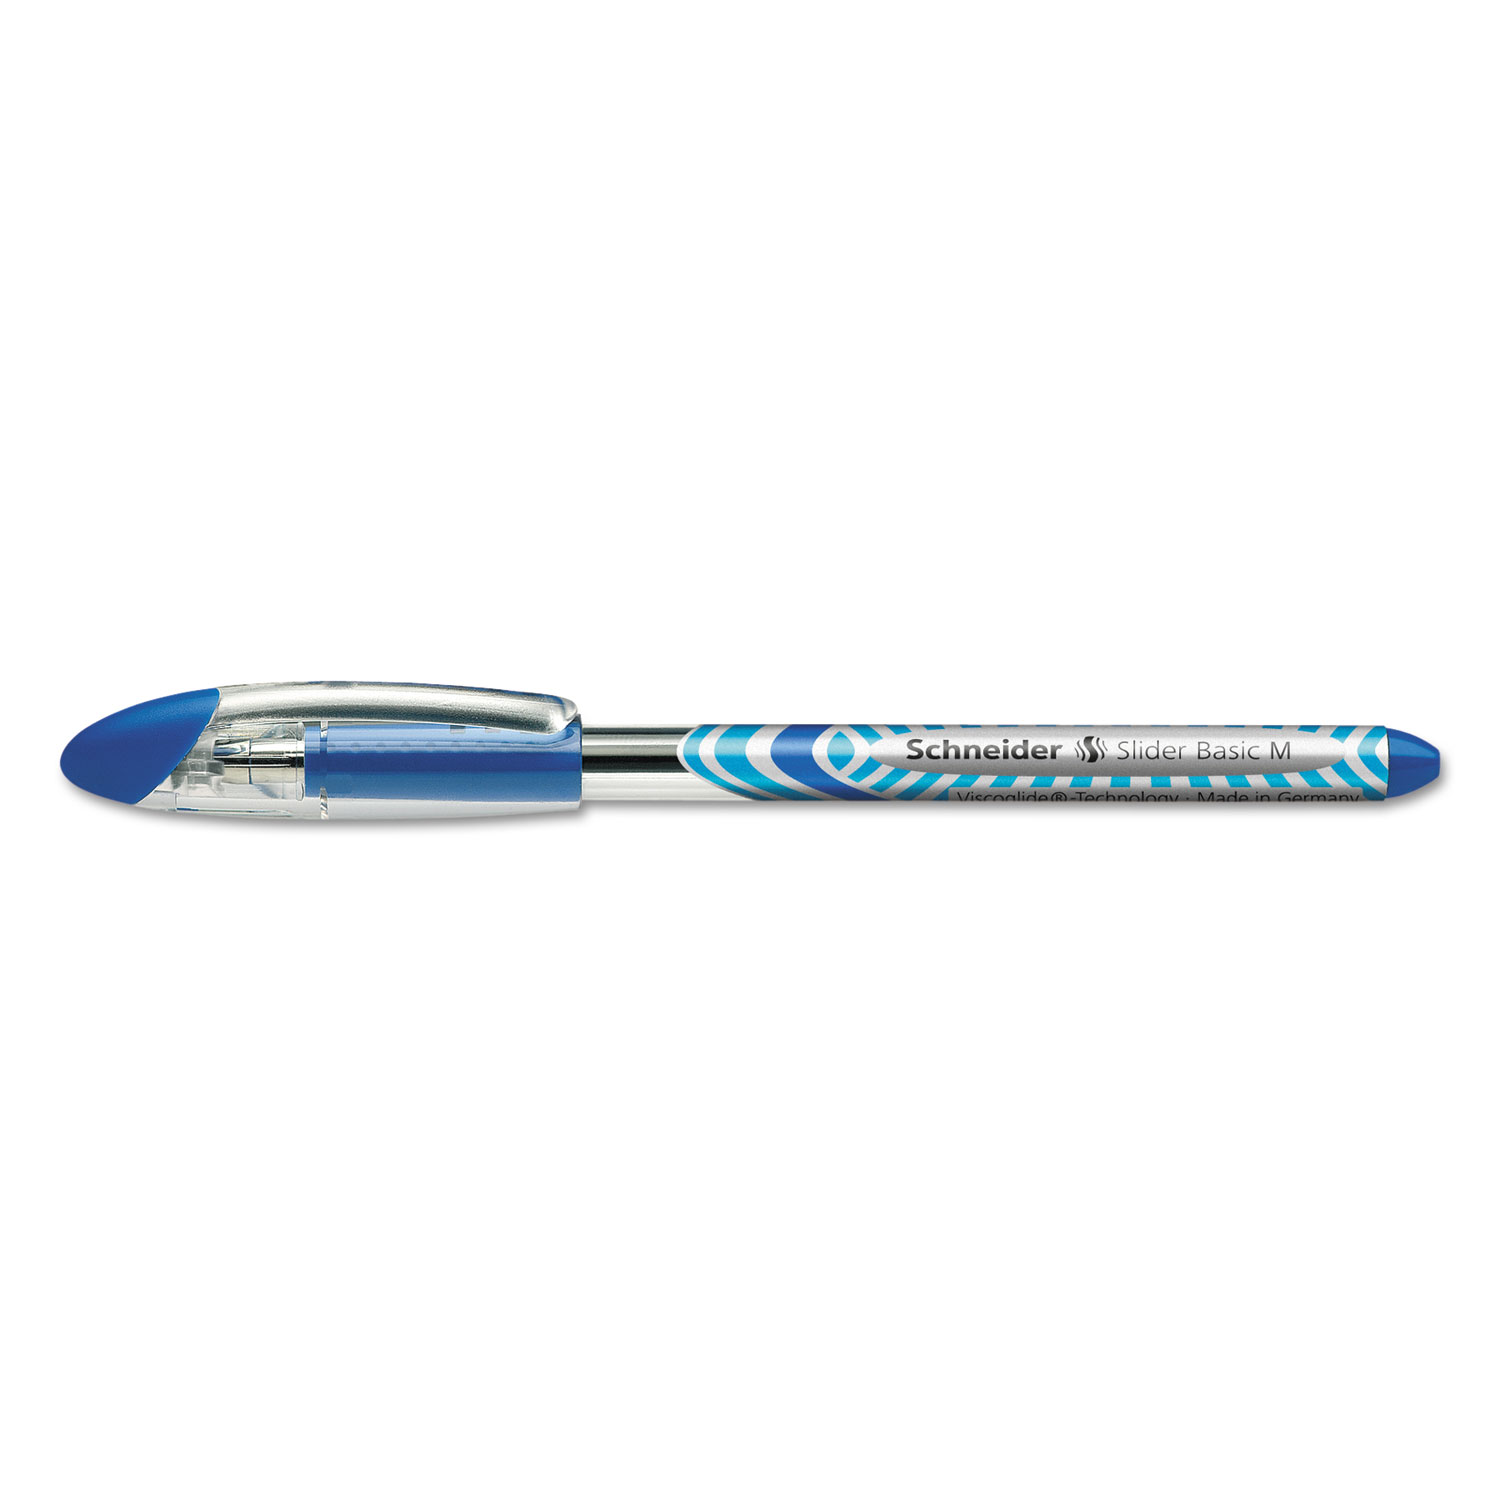  Stride 151103 Schneider Slider Stick Ballpoint Pen, 0.8mm, Blue Ink, Blue/Silver Barrel, 10/Box (STW151103) 